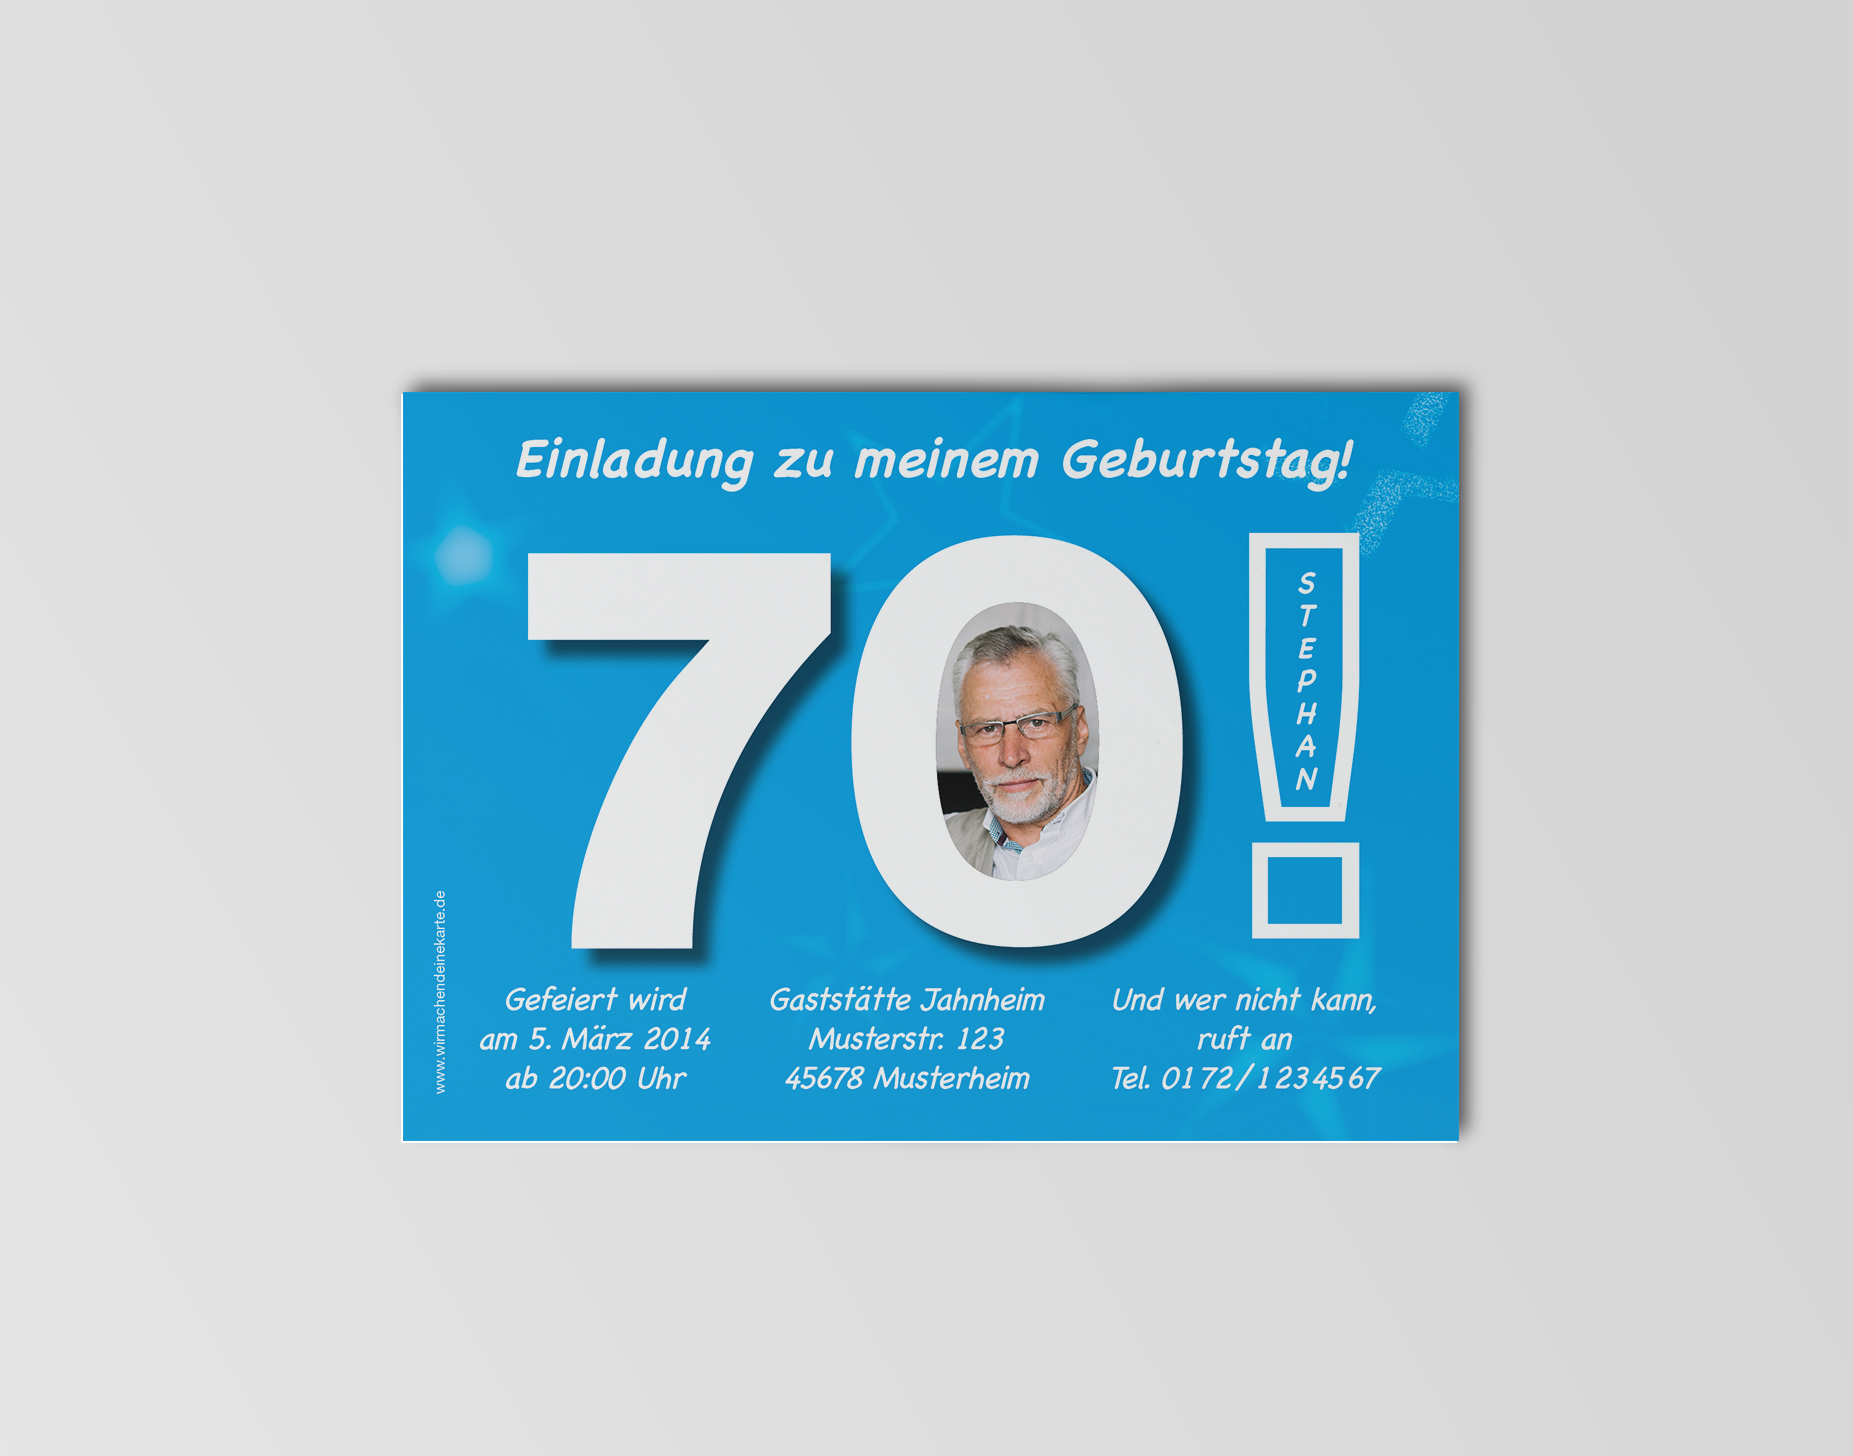 Einladungskarten Geburtstag Zu 70. Auf Bayrisch - Einladungen Erwachsene Mit Ihren Fotos Wunschtext Gestaltet - Auf diesen einfachen einladungskarten zum 70.